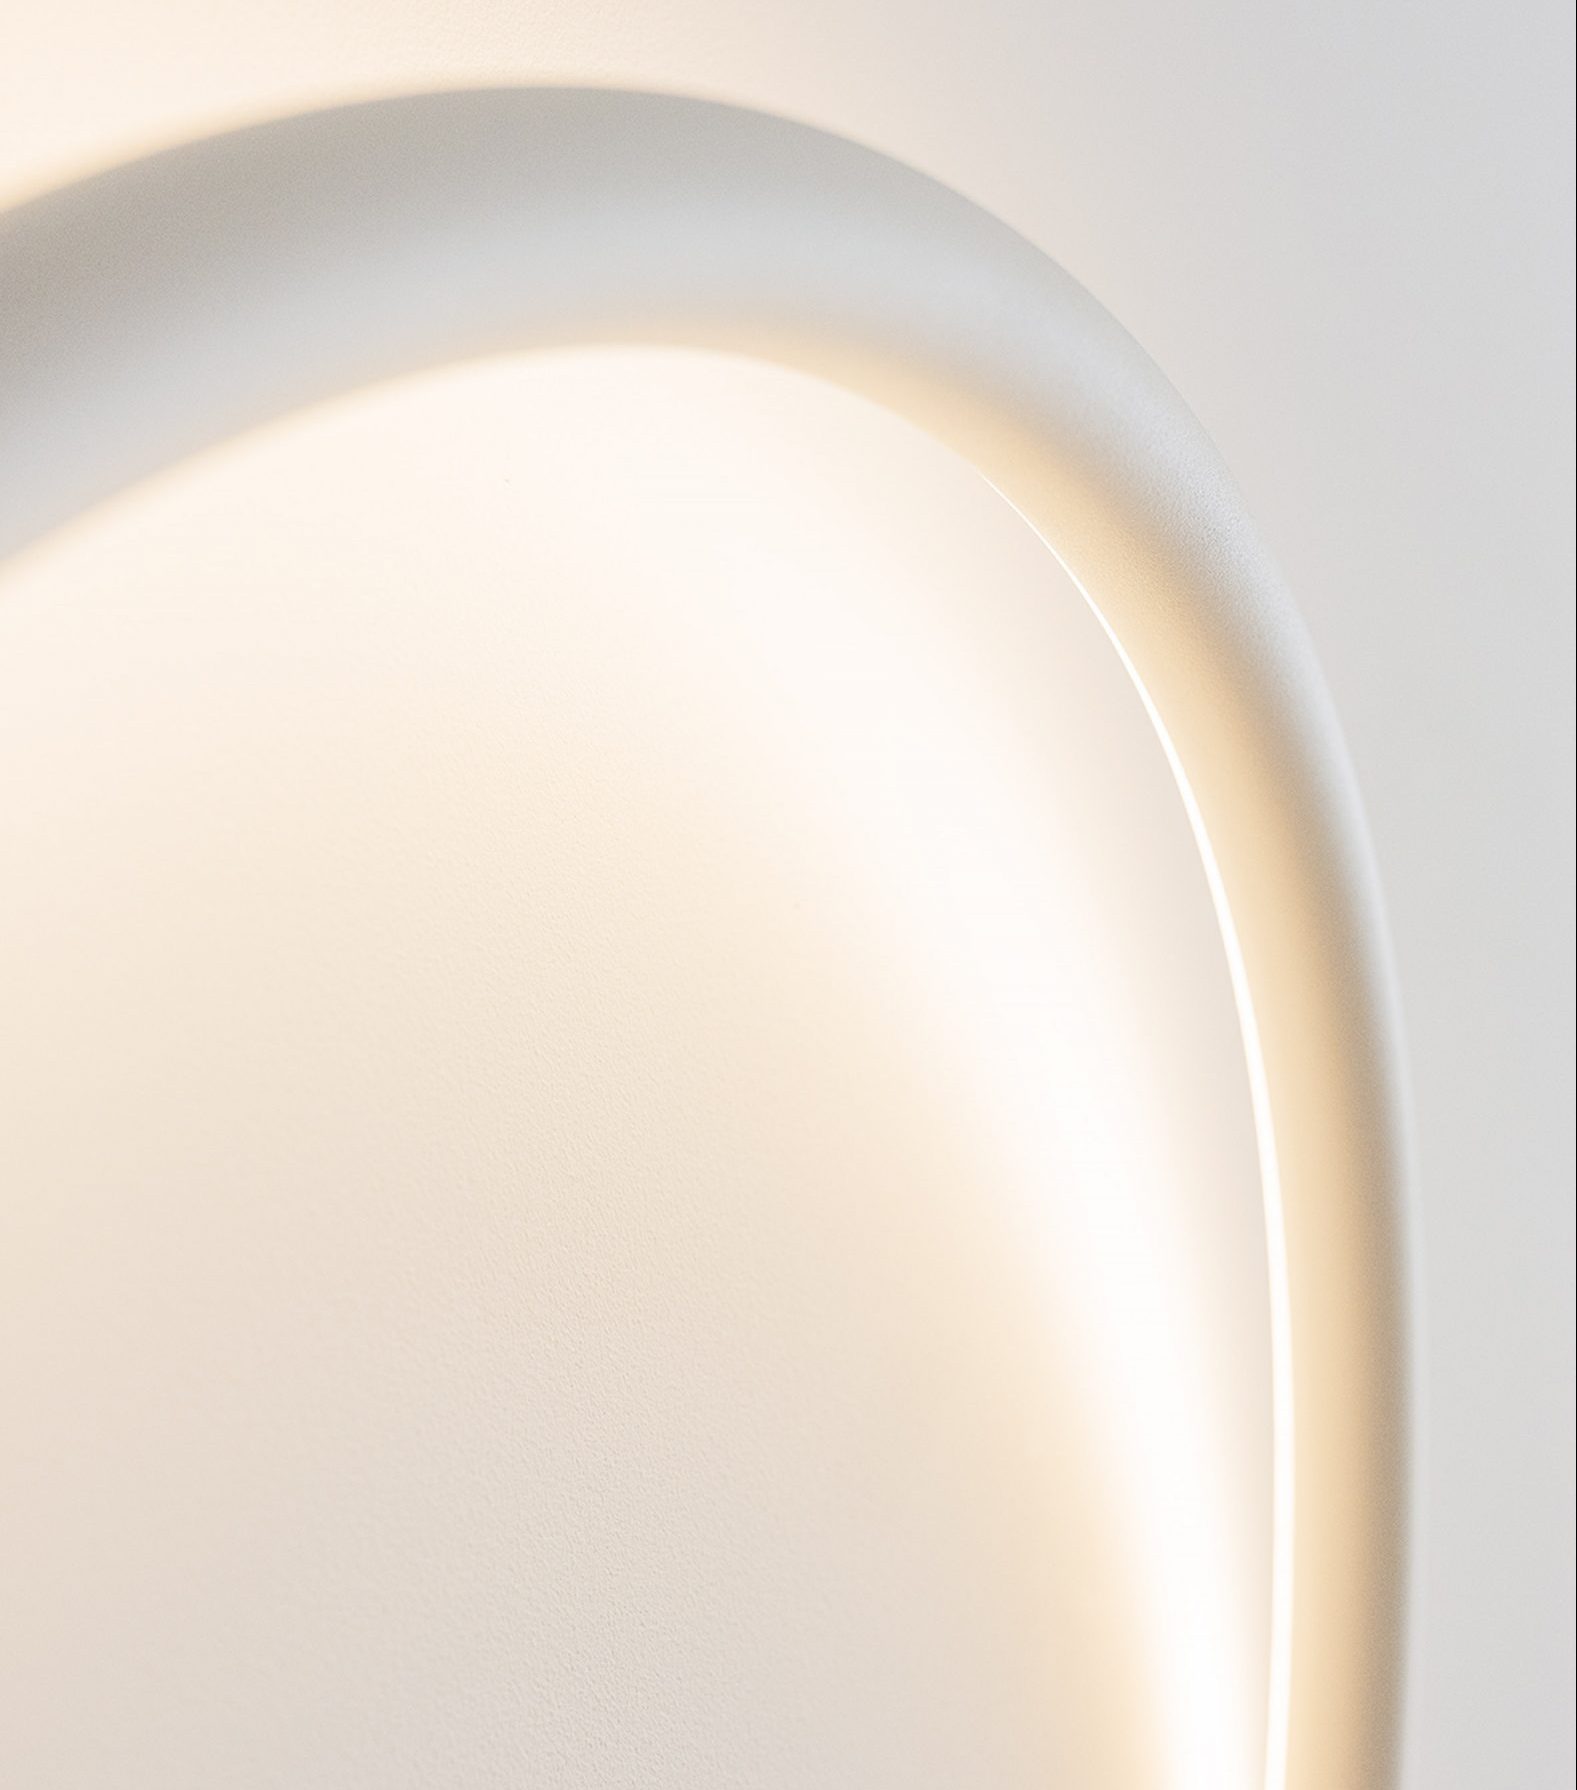 A light designed by Sabine Marcelis